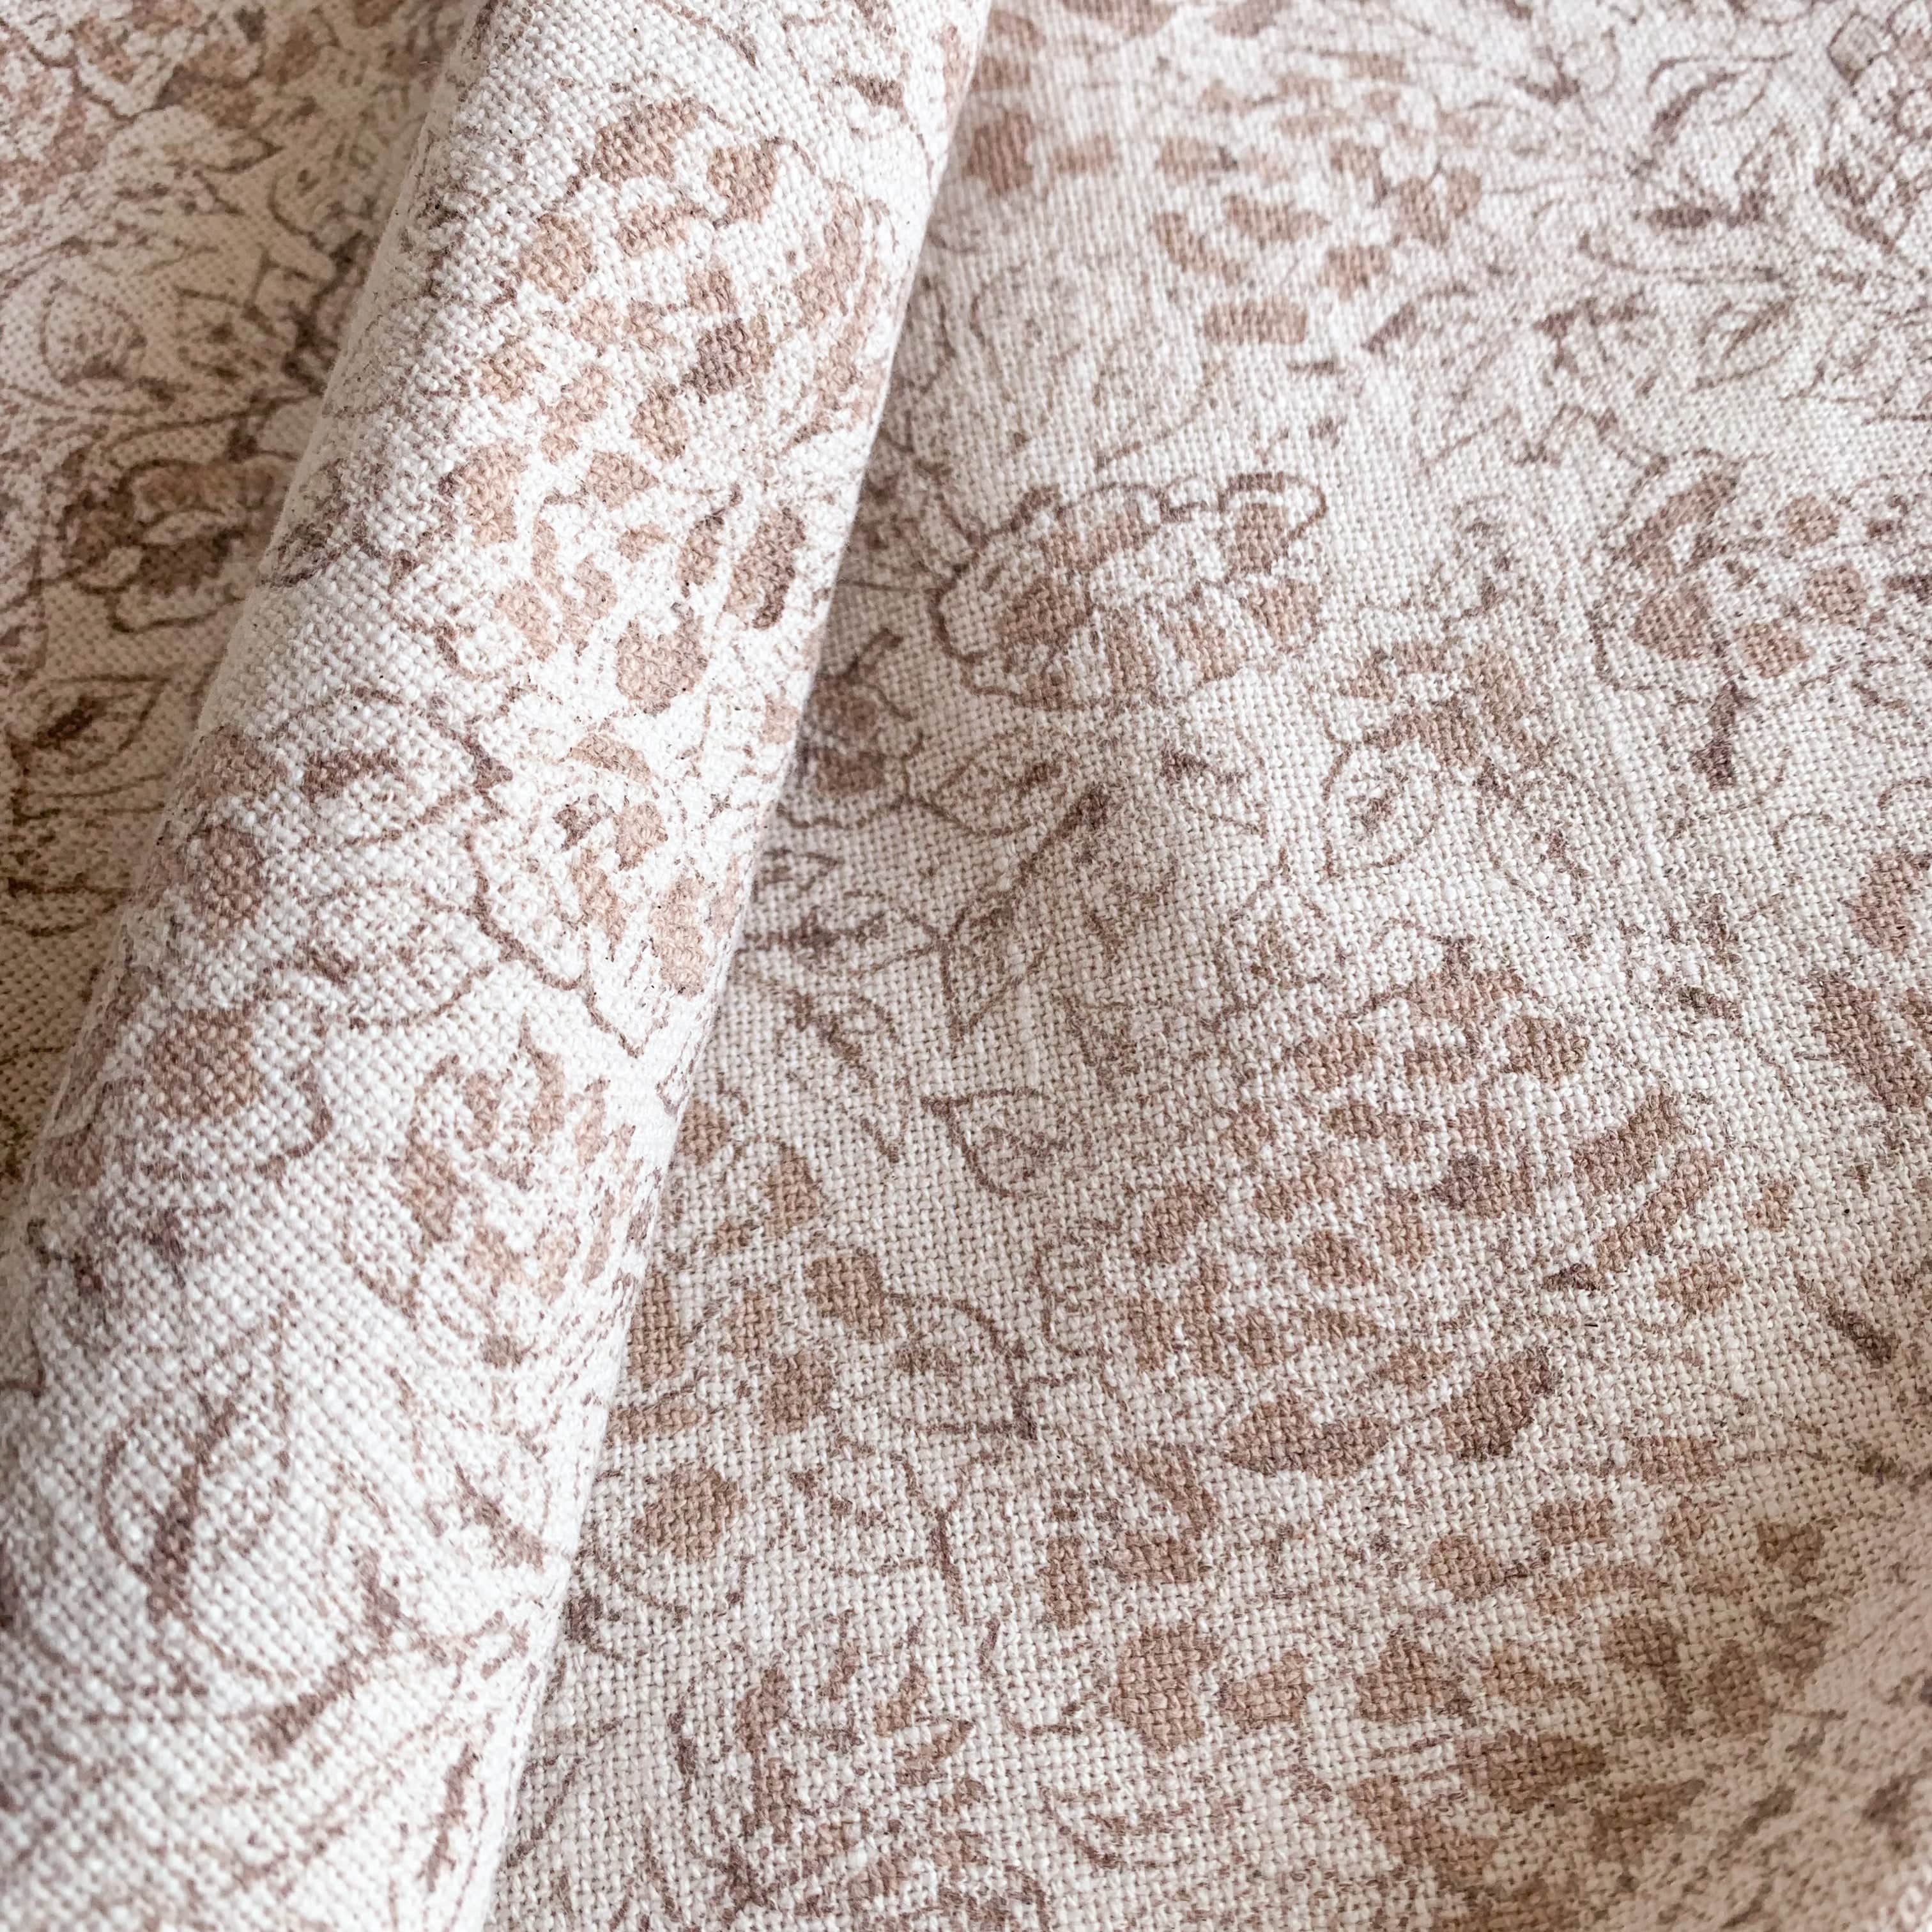 Abril Floral Block Printed Pillow Cover | Rose | Lumbar